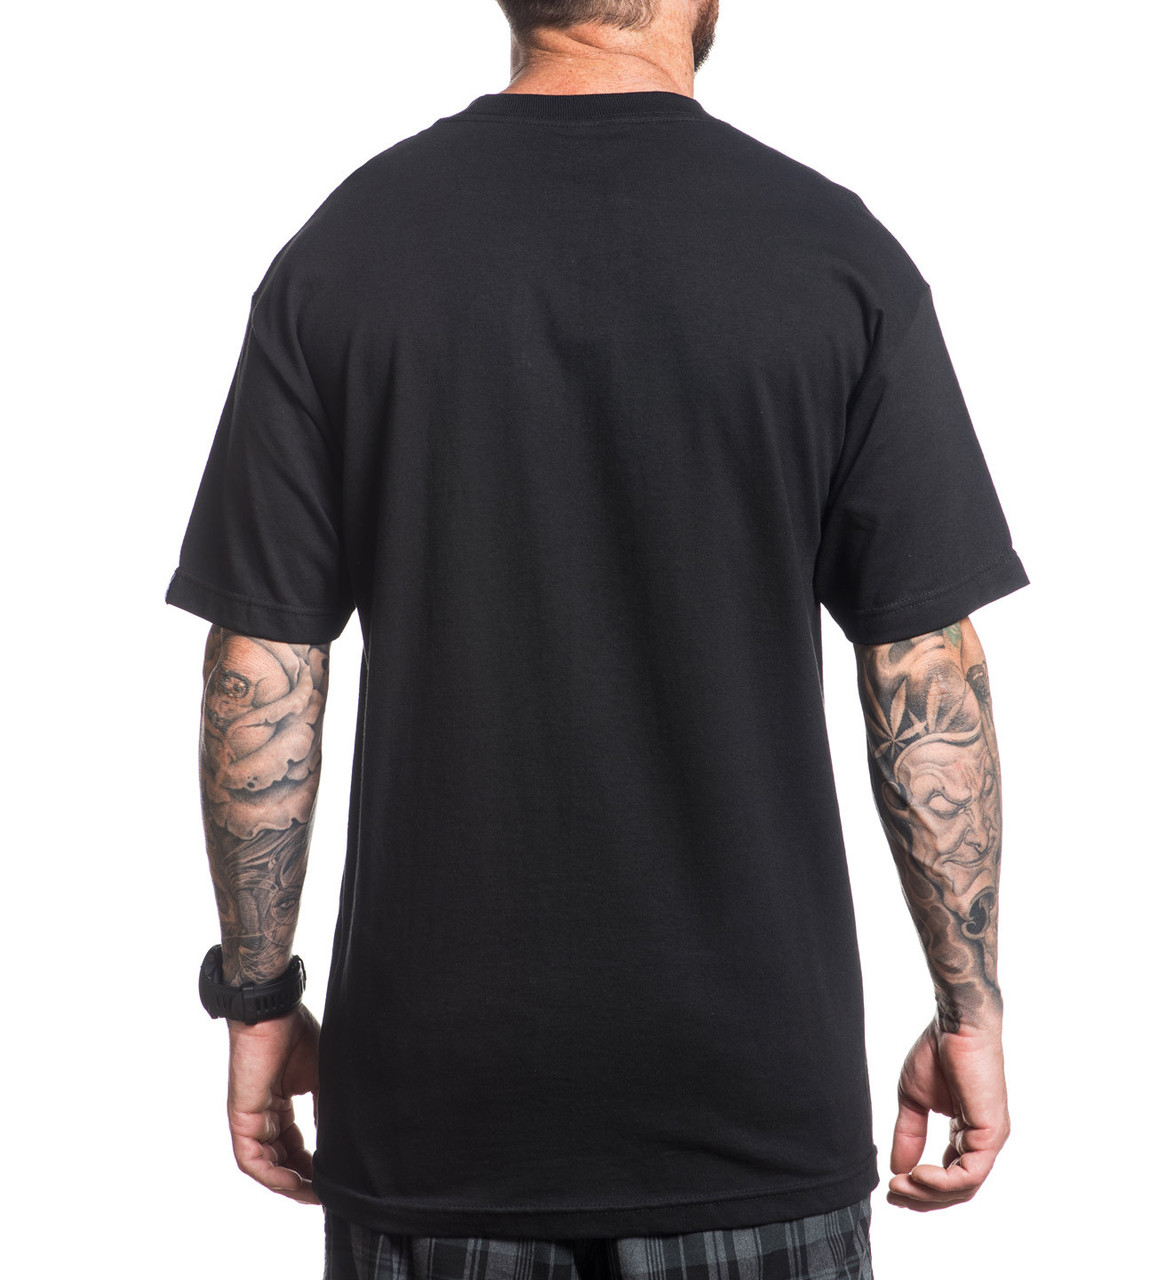 Sullen Eternal T-Shirt - Merch2rock Alternative Clothing